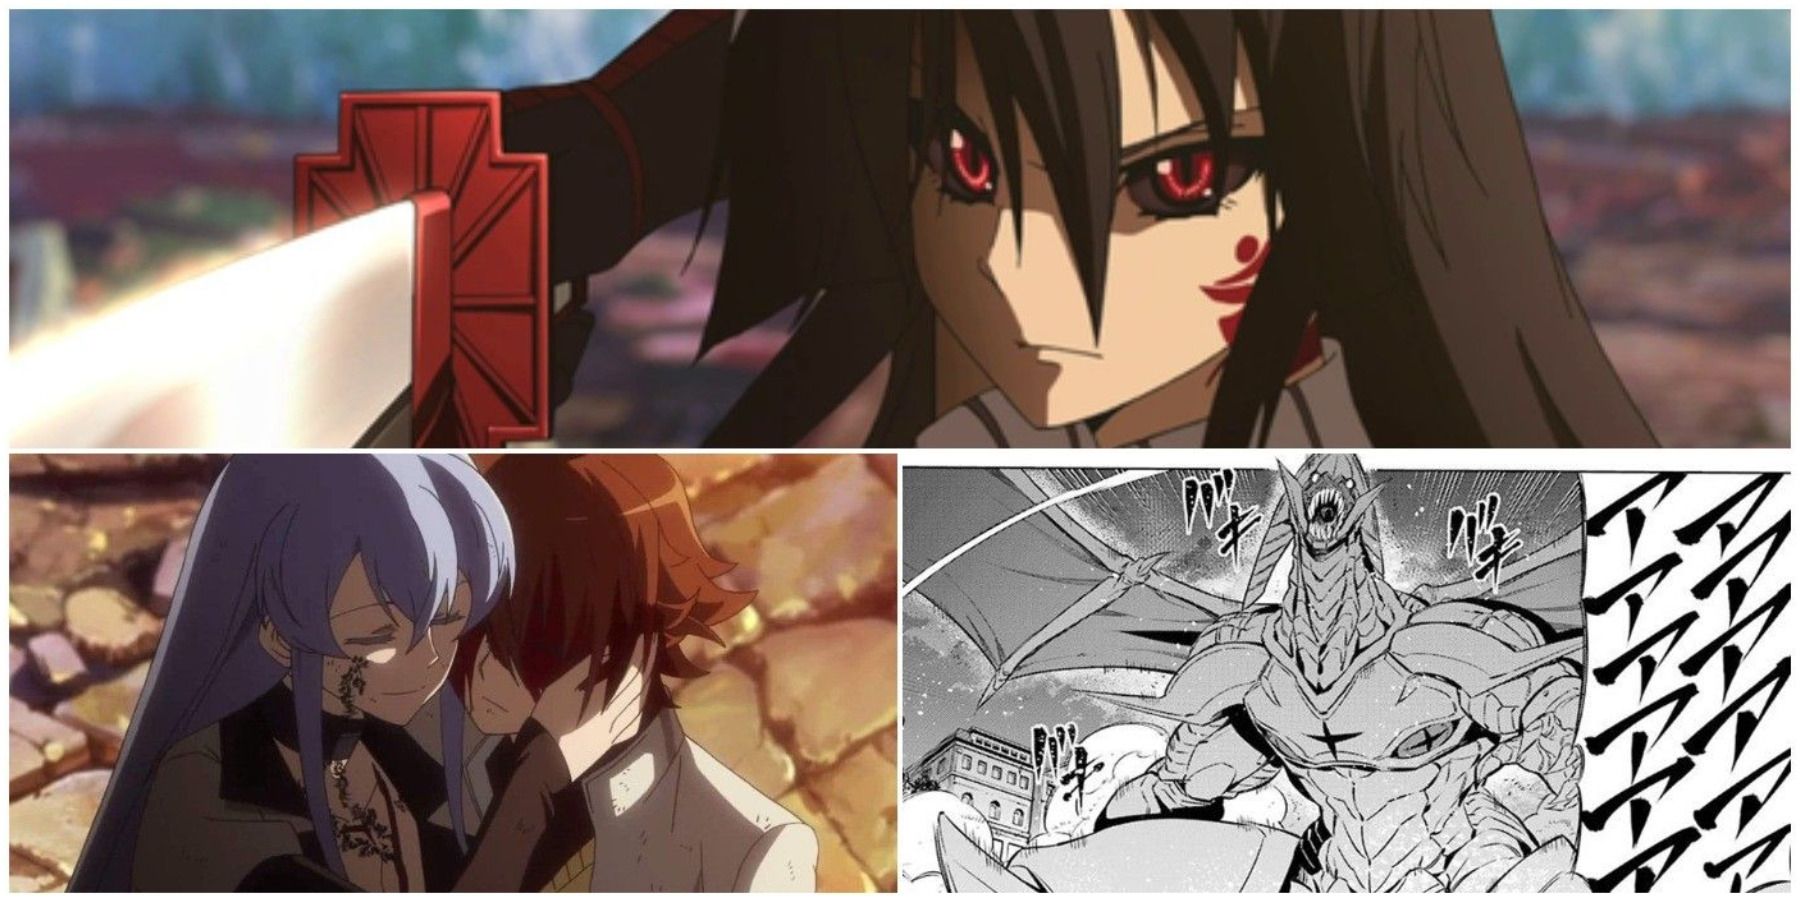 Akame Ga Kill: Major Differences Between The Manga & Anime